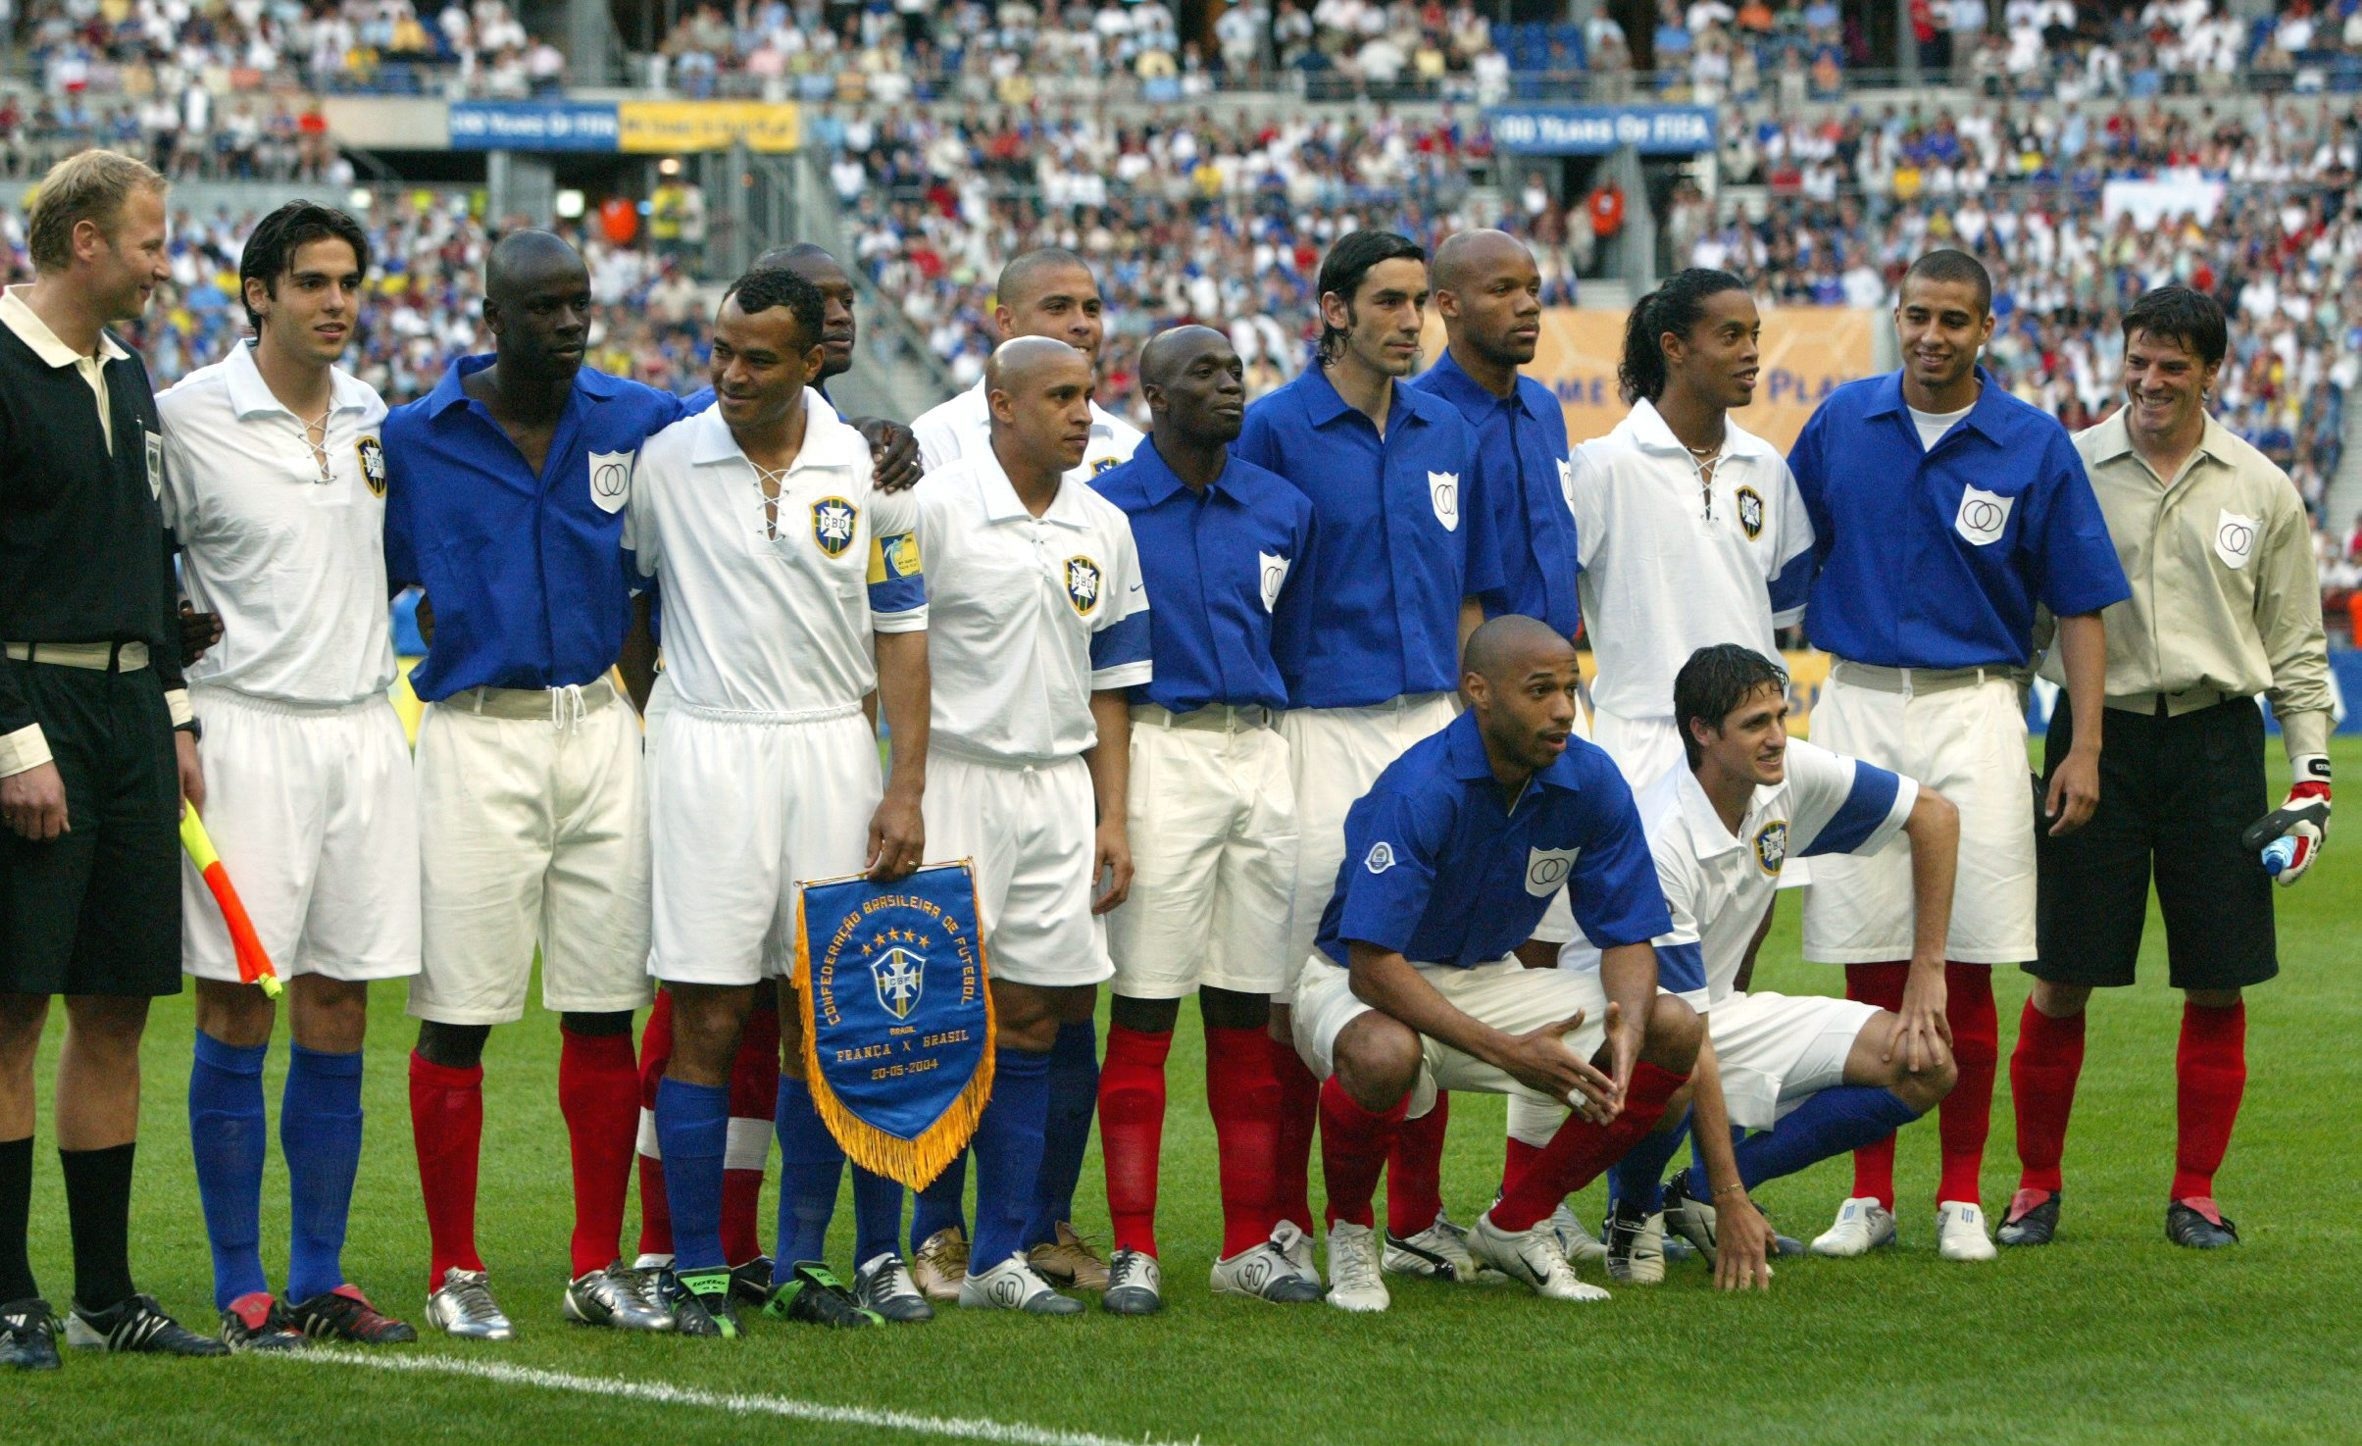 Jogadores de Brasil e França perfilados, com uniformes antigos, no centenário da Fifa em 2004